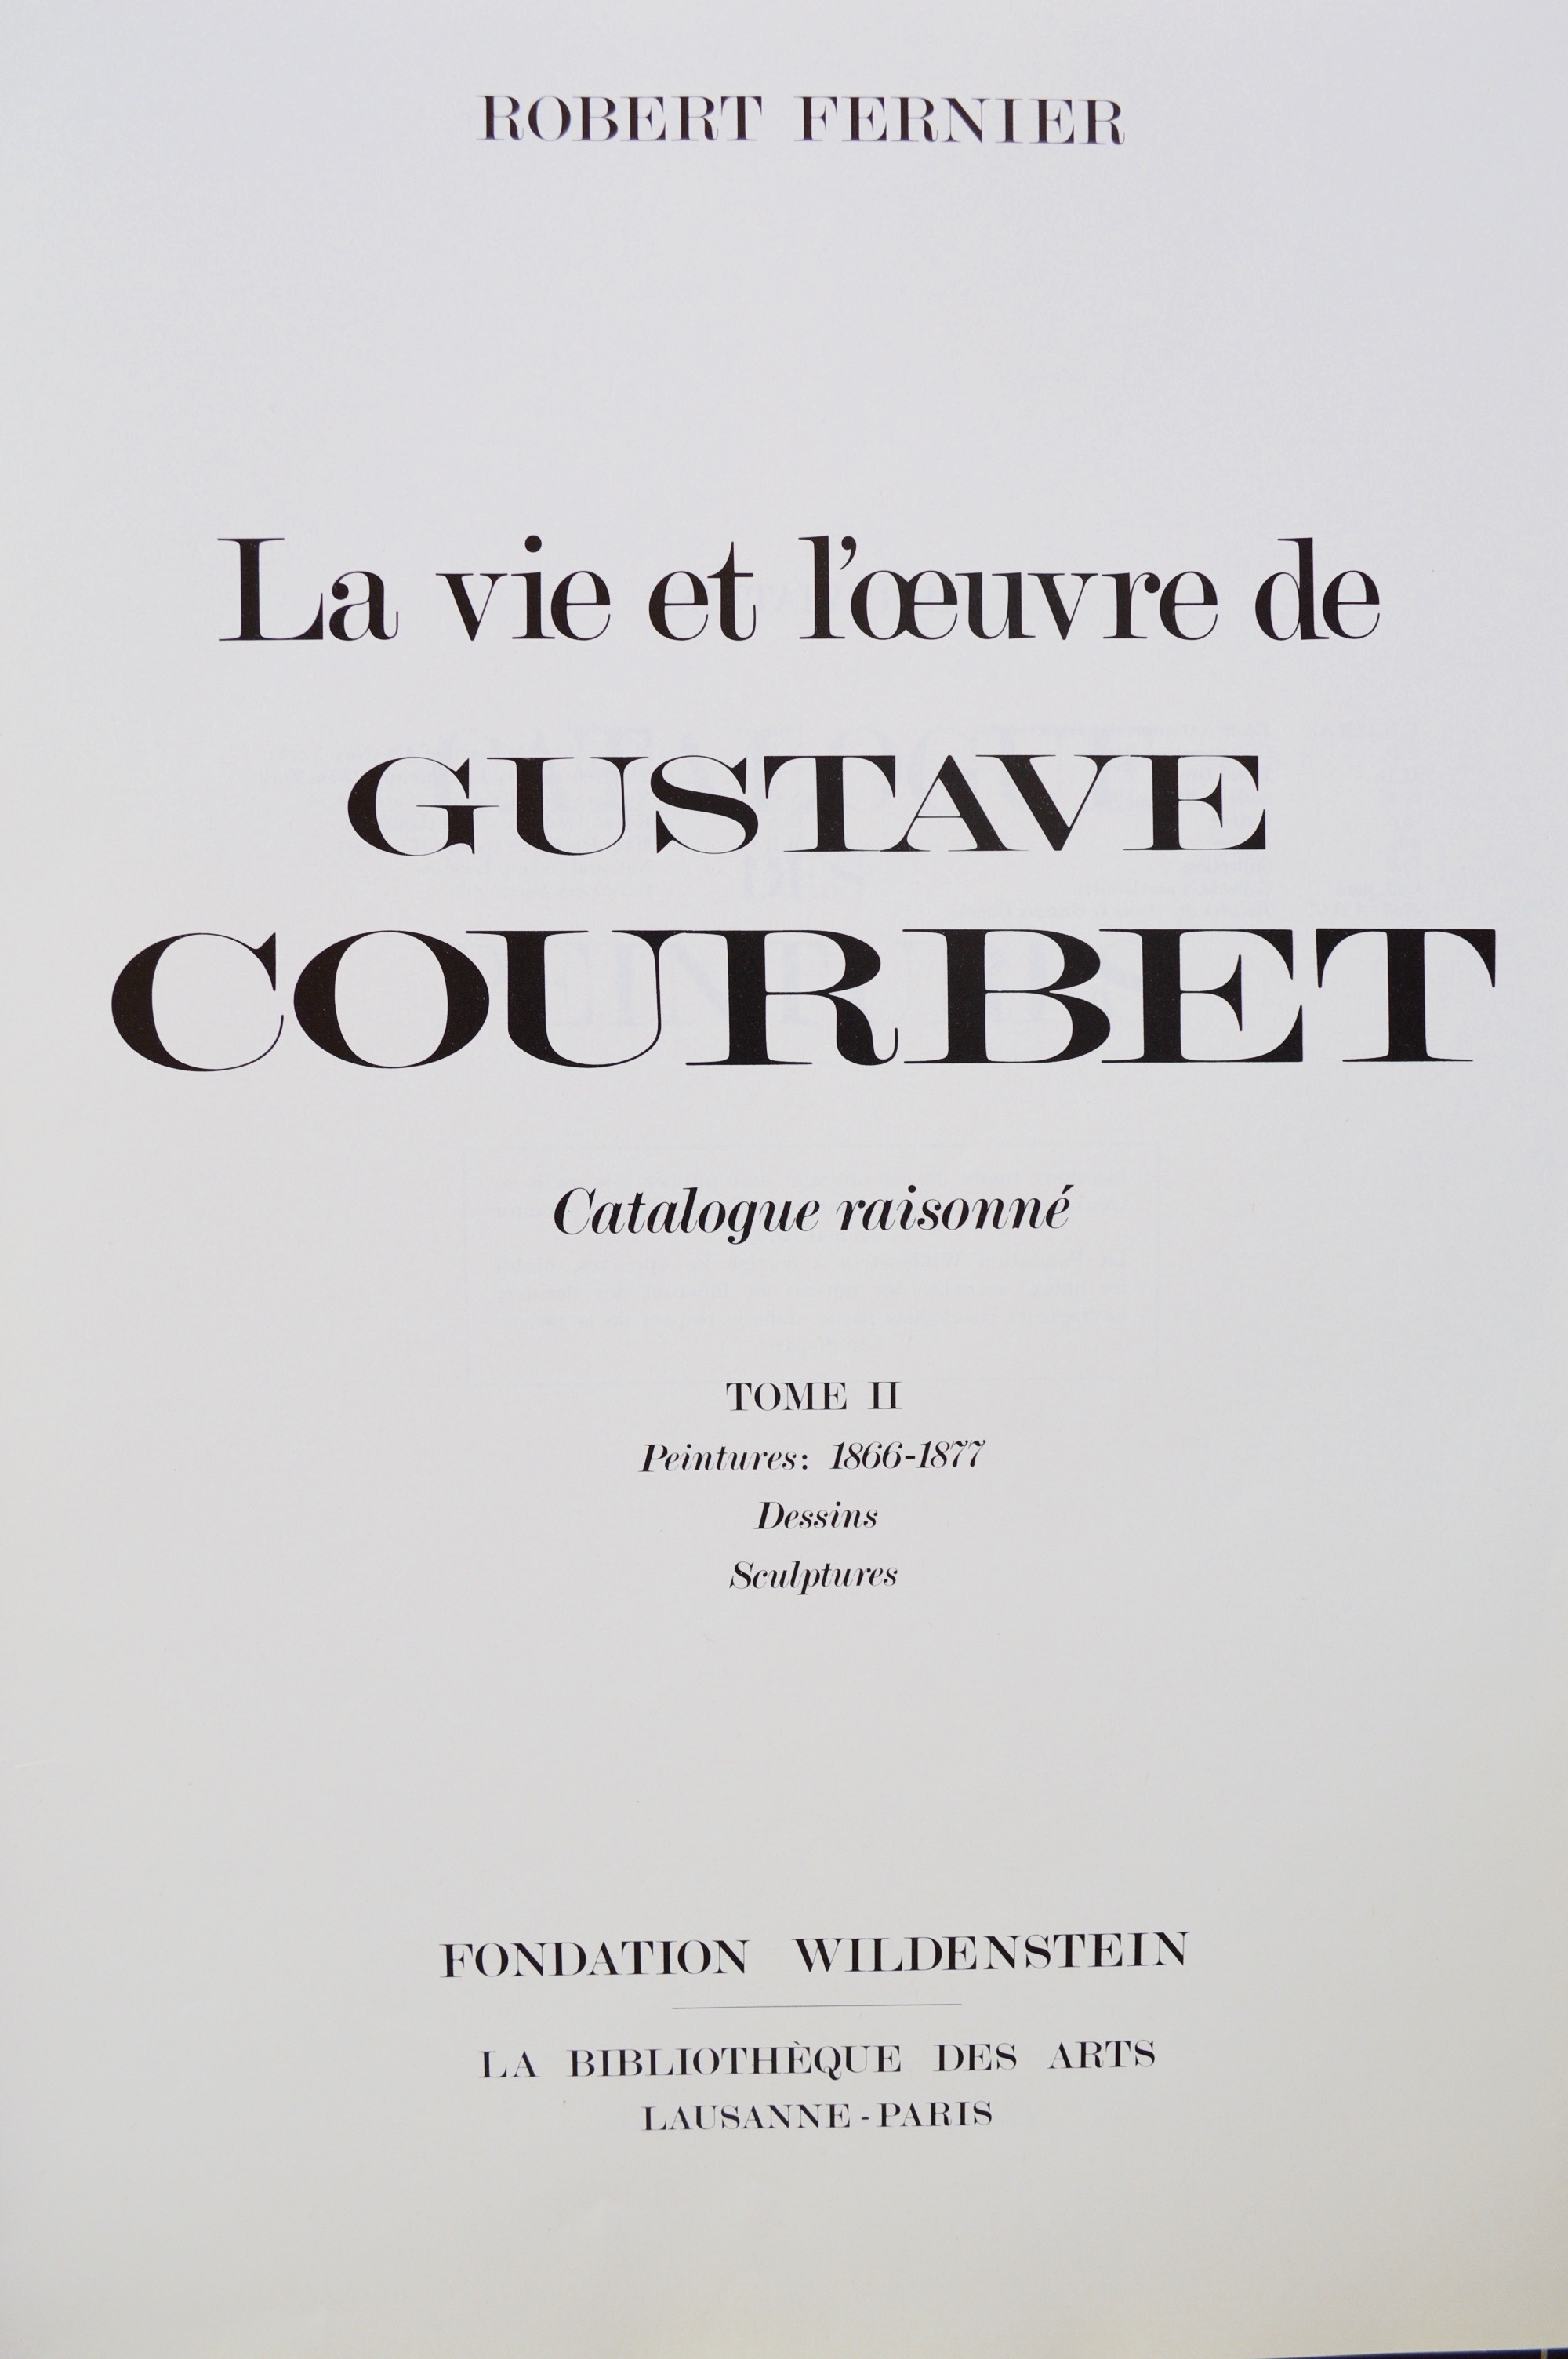 Catalogue Raisonné Gustave Courbet Robert Fernier Tome 2 1873 Fondation Wildenstein La Bibliothèque des Arts